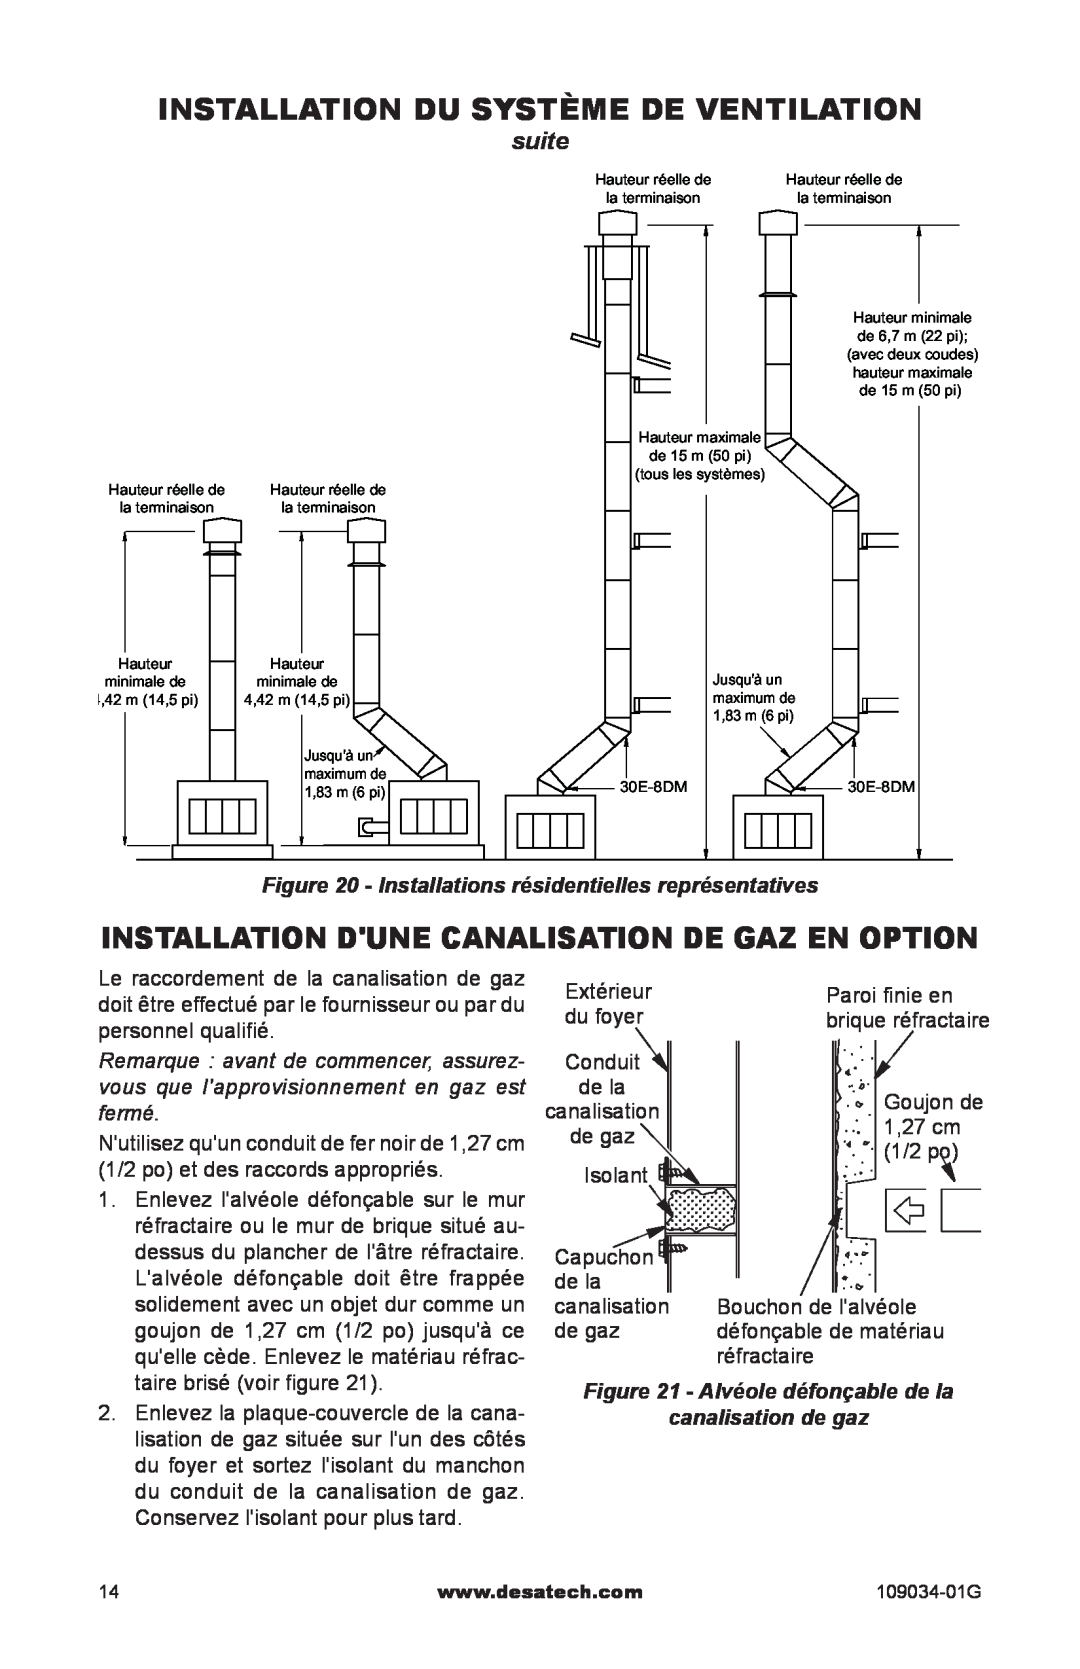 Desa CWB36C, (V)B36LI Installation du système de ventilation, Installation dune canalisation de gaz en option, suite 